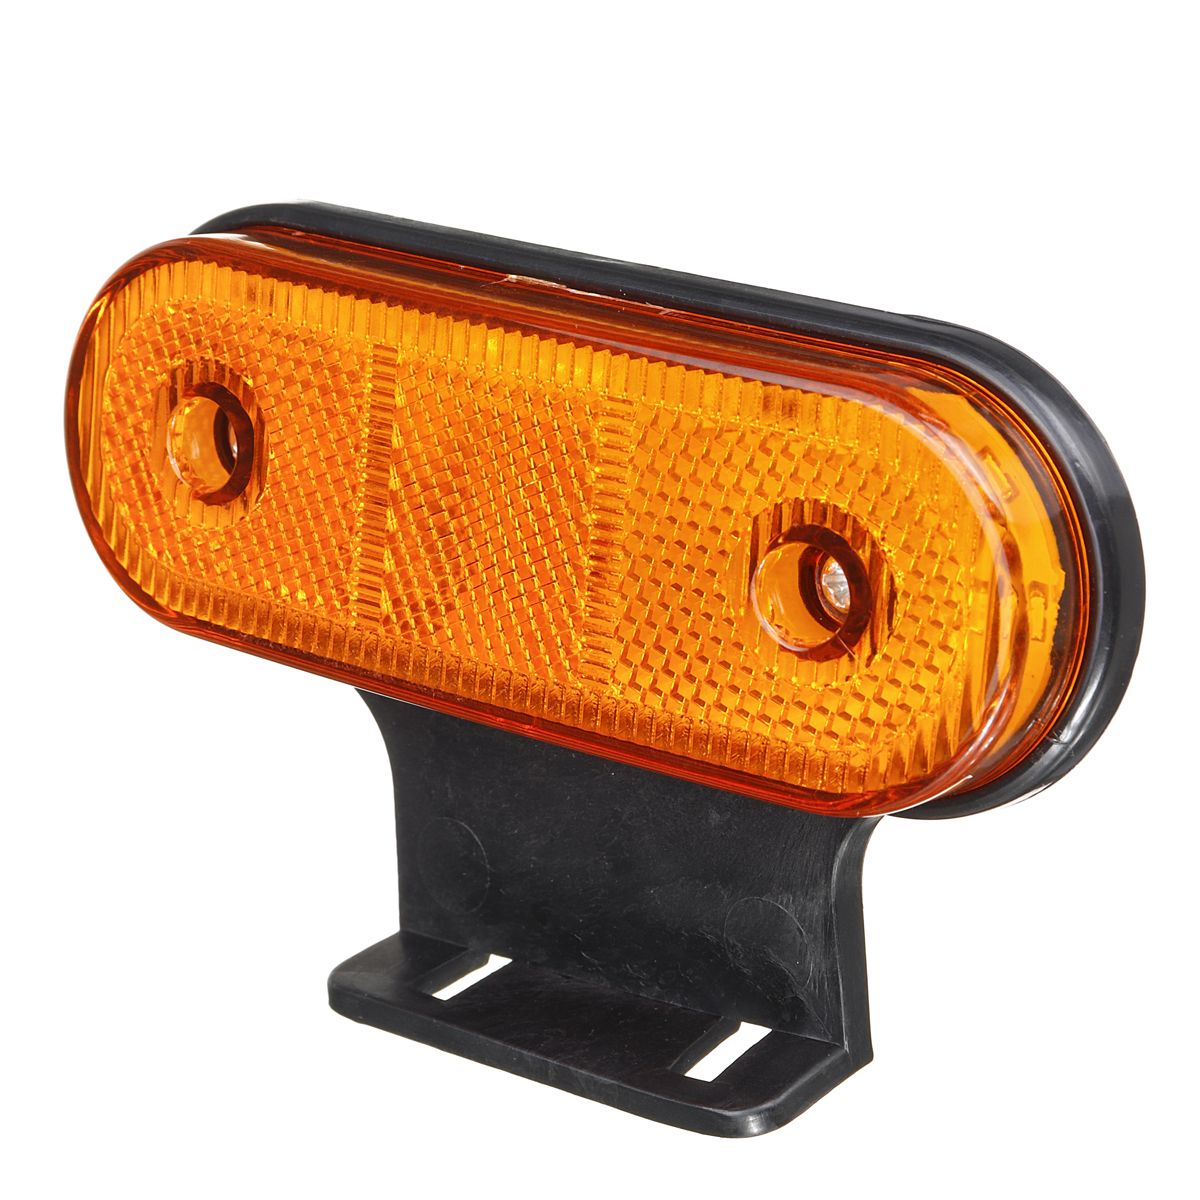 12V24V-20-LED-Side-Marker-Lights-Reflector-Lamp-Amber-With-Bracket-For-Truck-Trailer-1617515